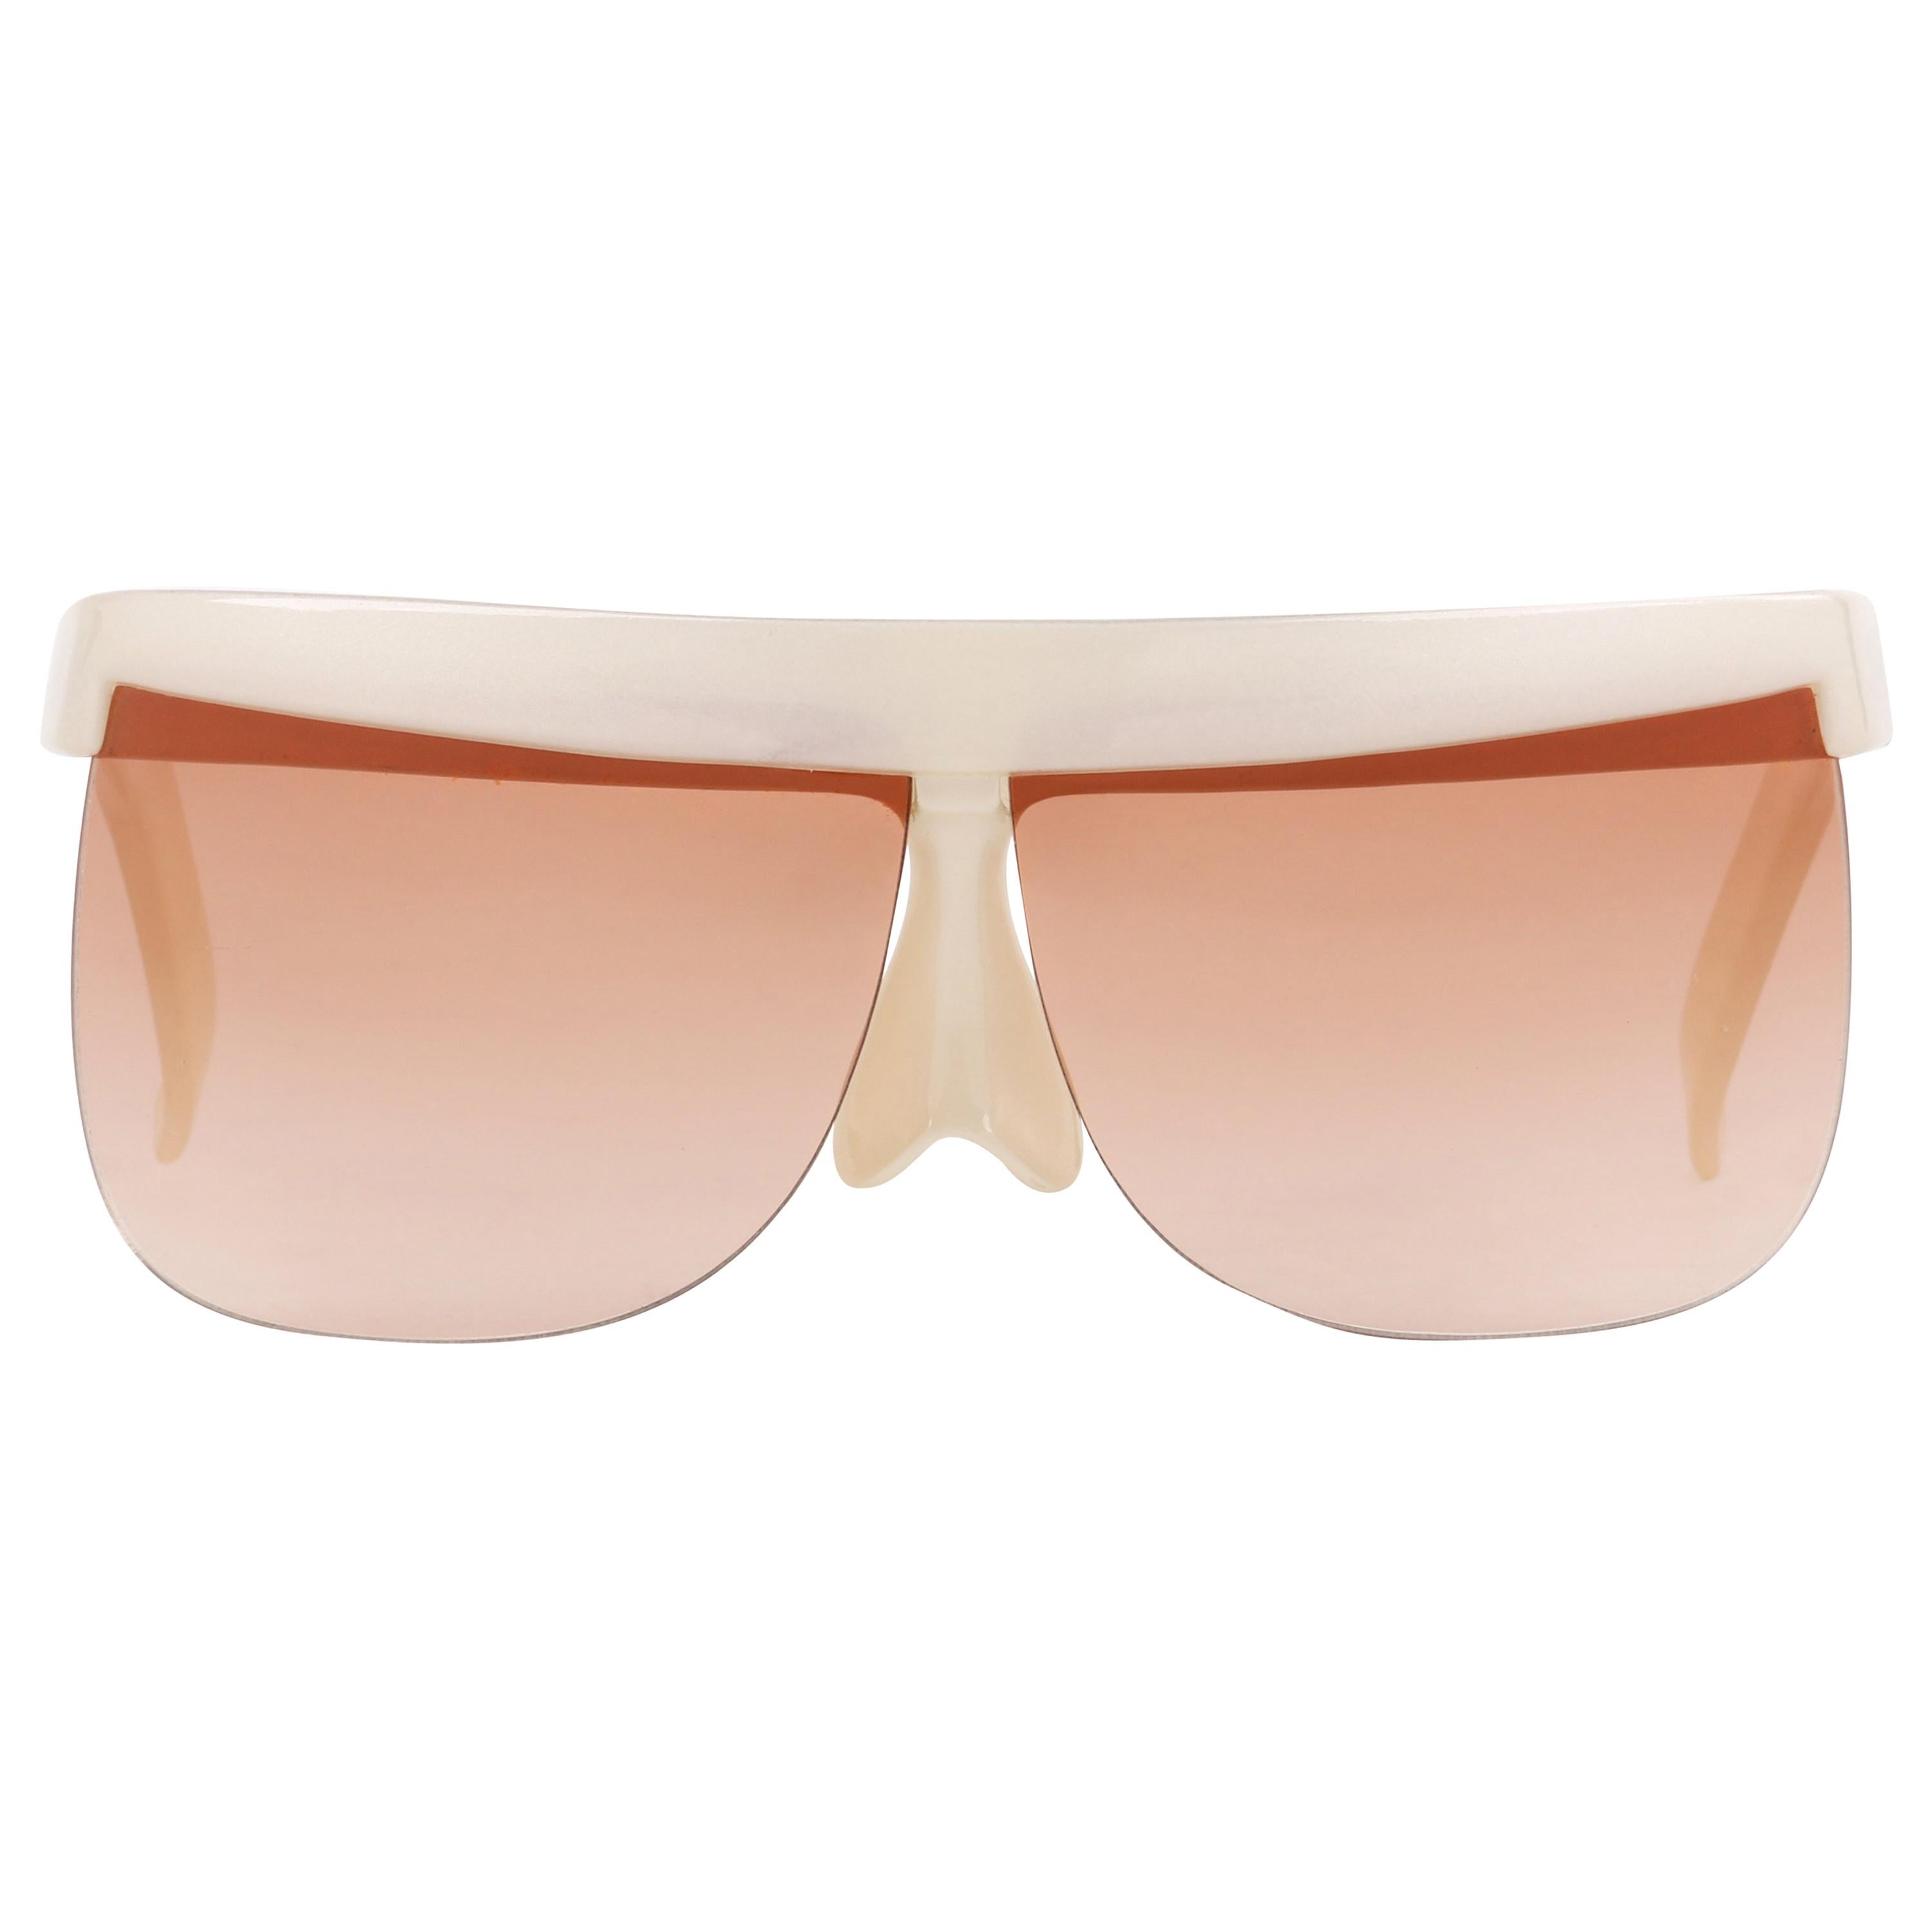 COURREGES c.1970's Off White Plastic Half Frame Futuristic Sunglasses 7853